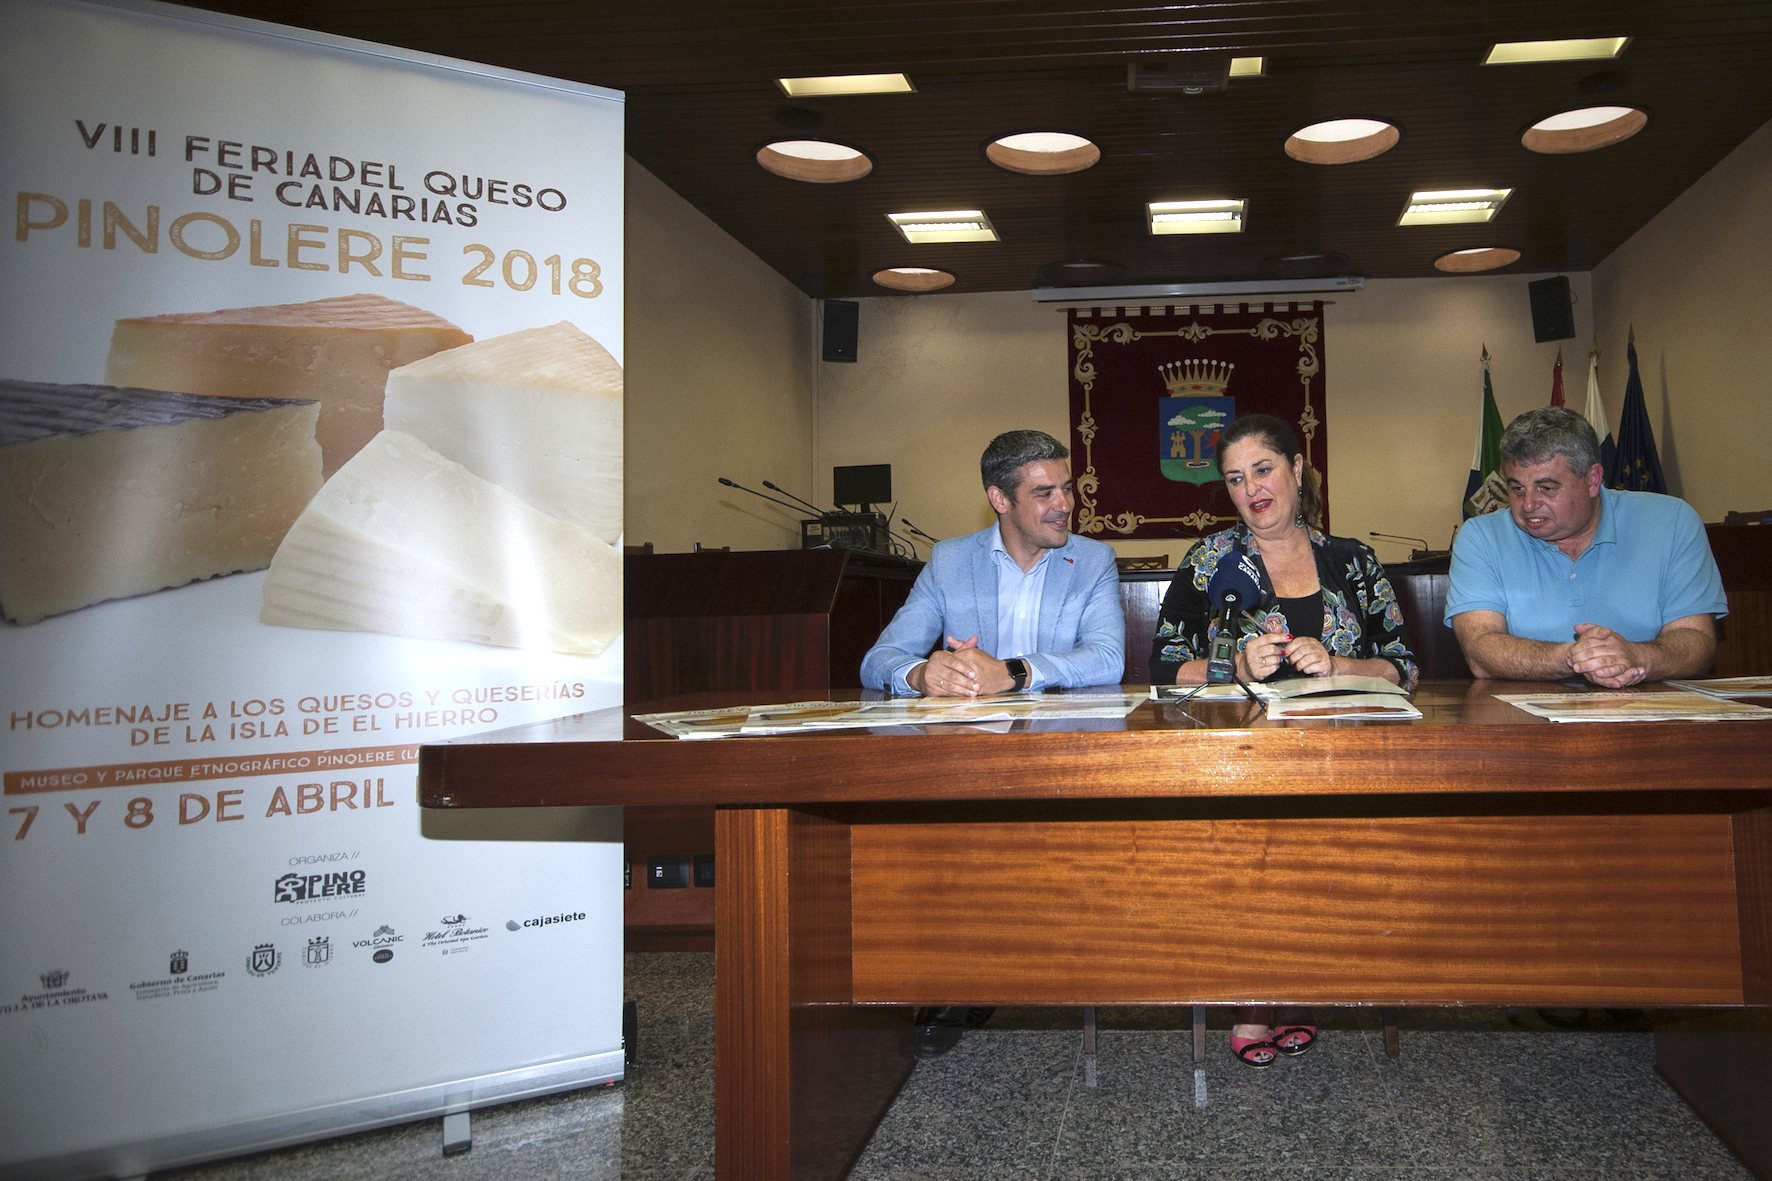 Presentado el cartel de la VII Feria del Queso de Canarias Pinolere 2018